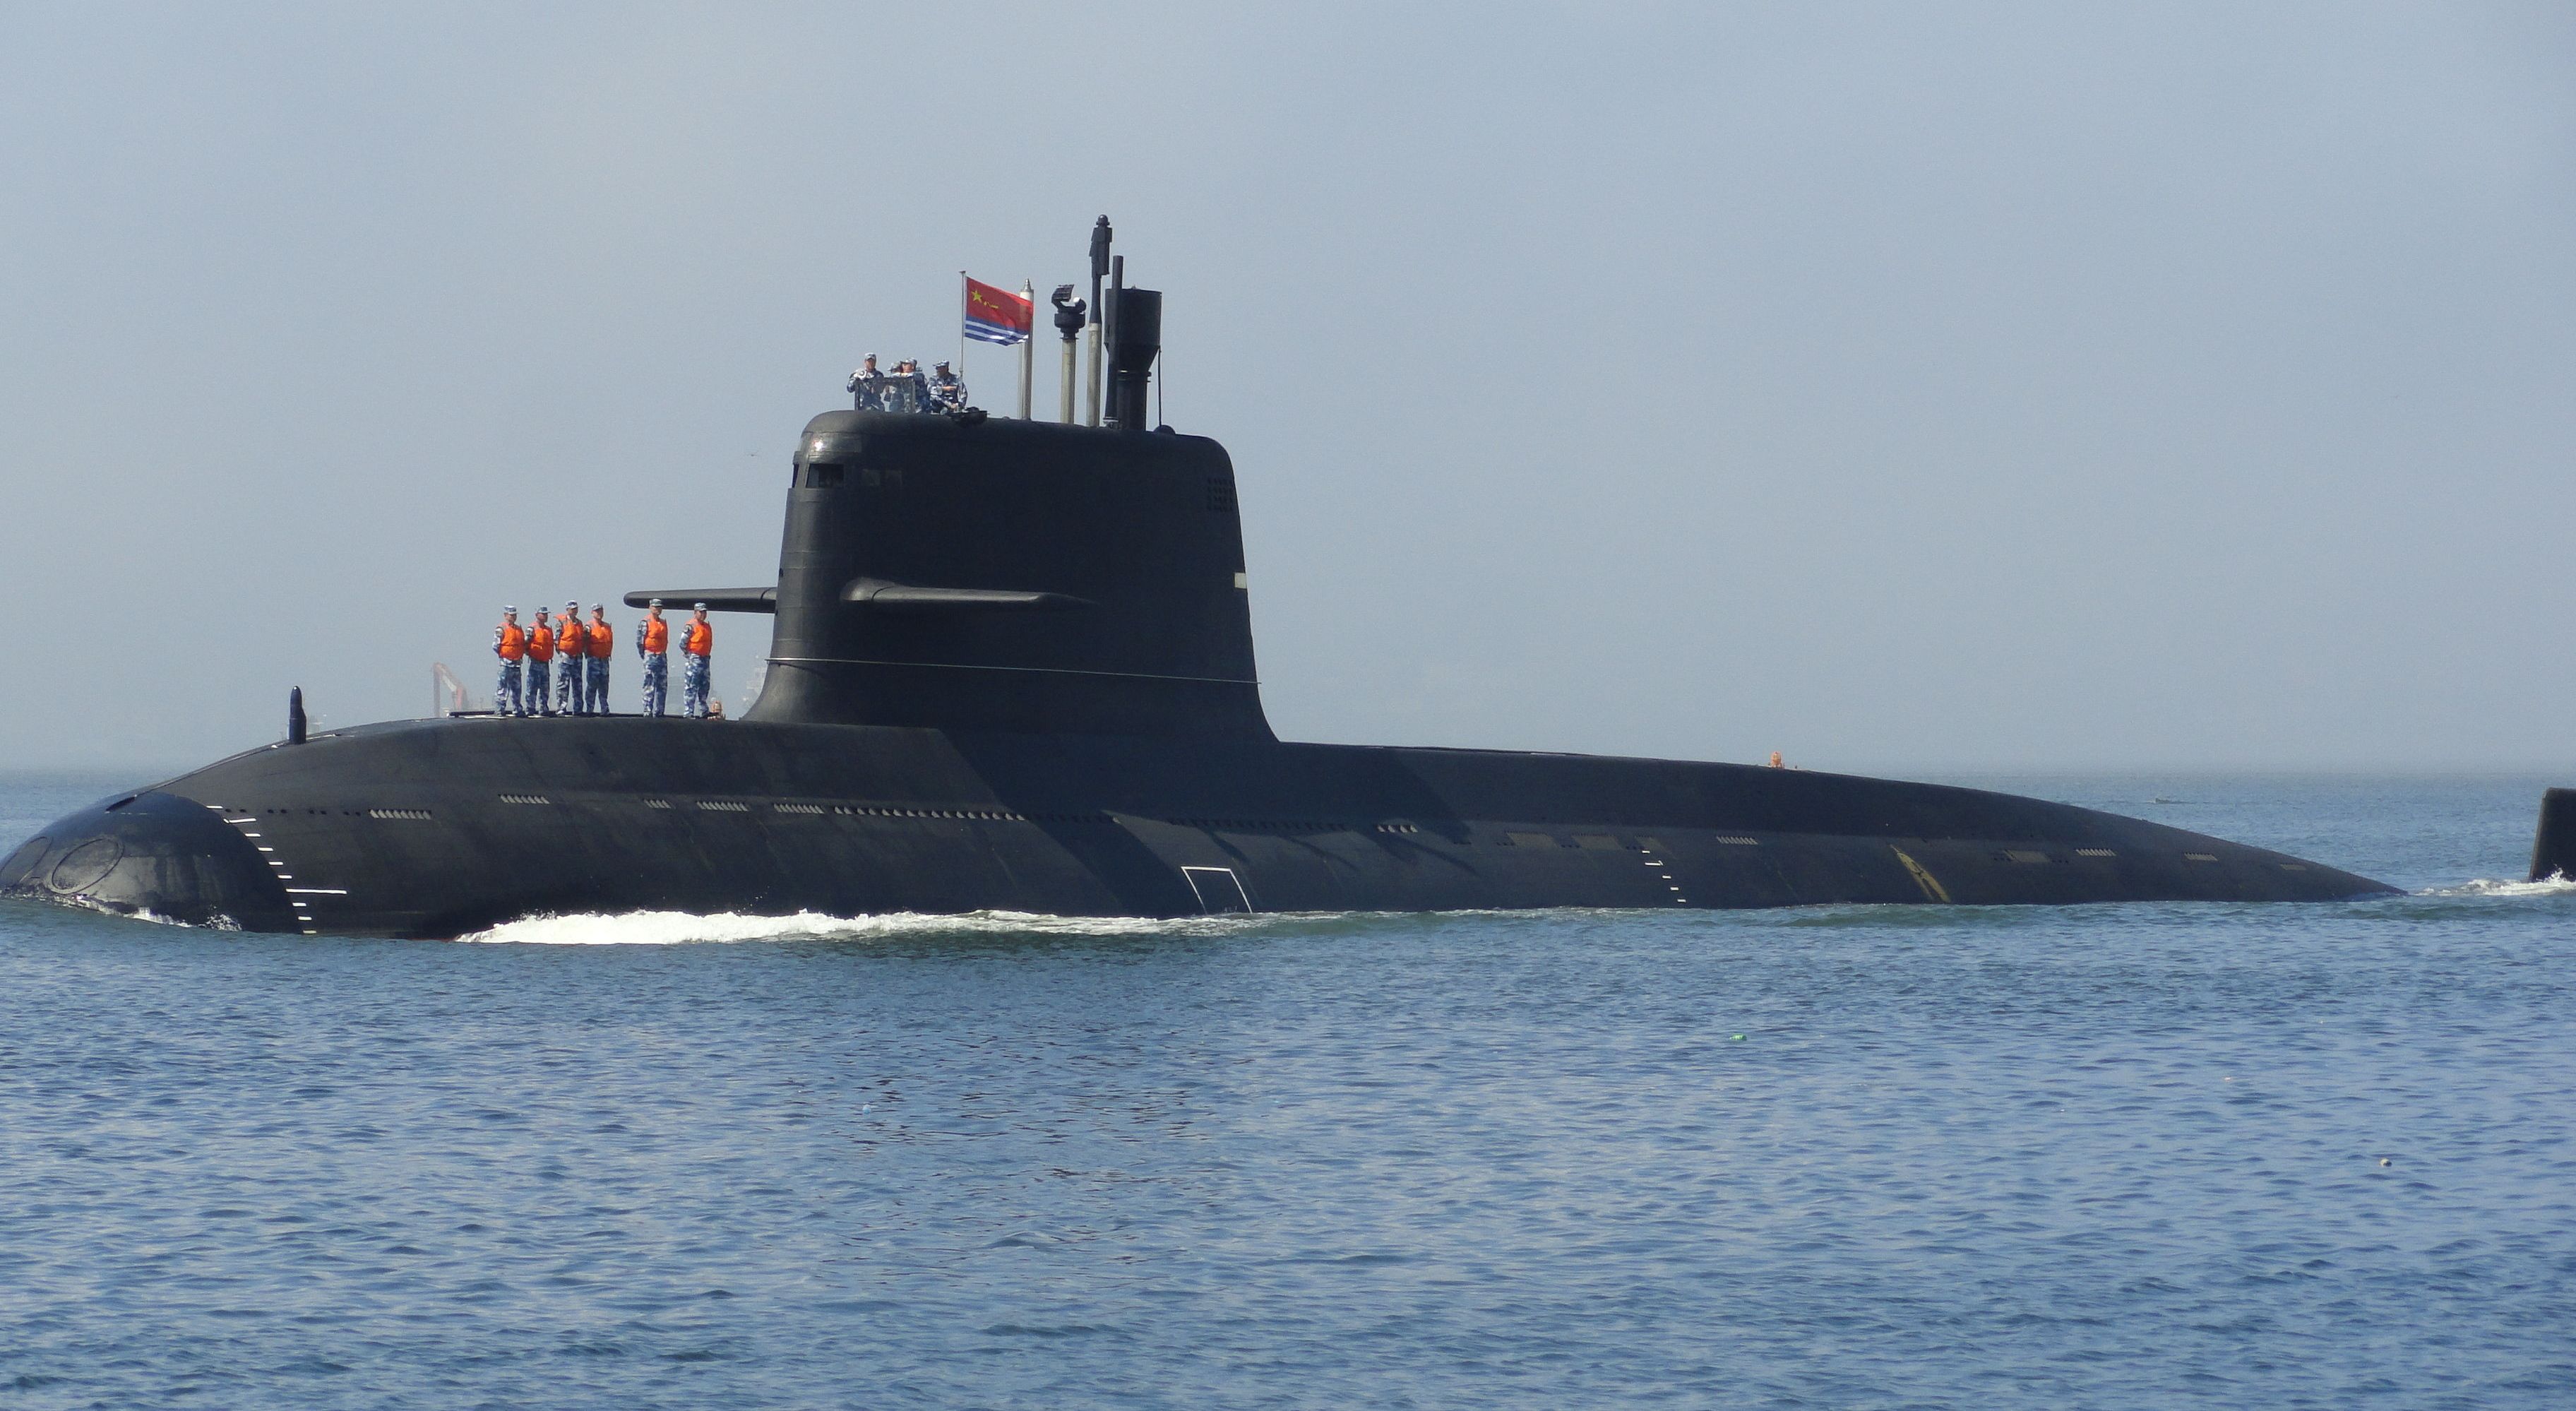 谁能想到?中国造出海上幽灵小型核潜艇,美海军:这是杀手锏